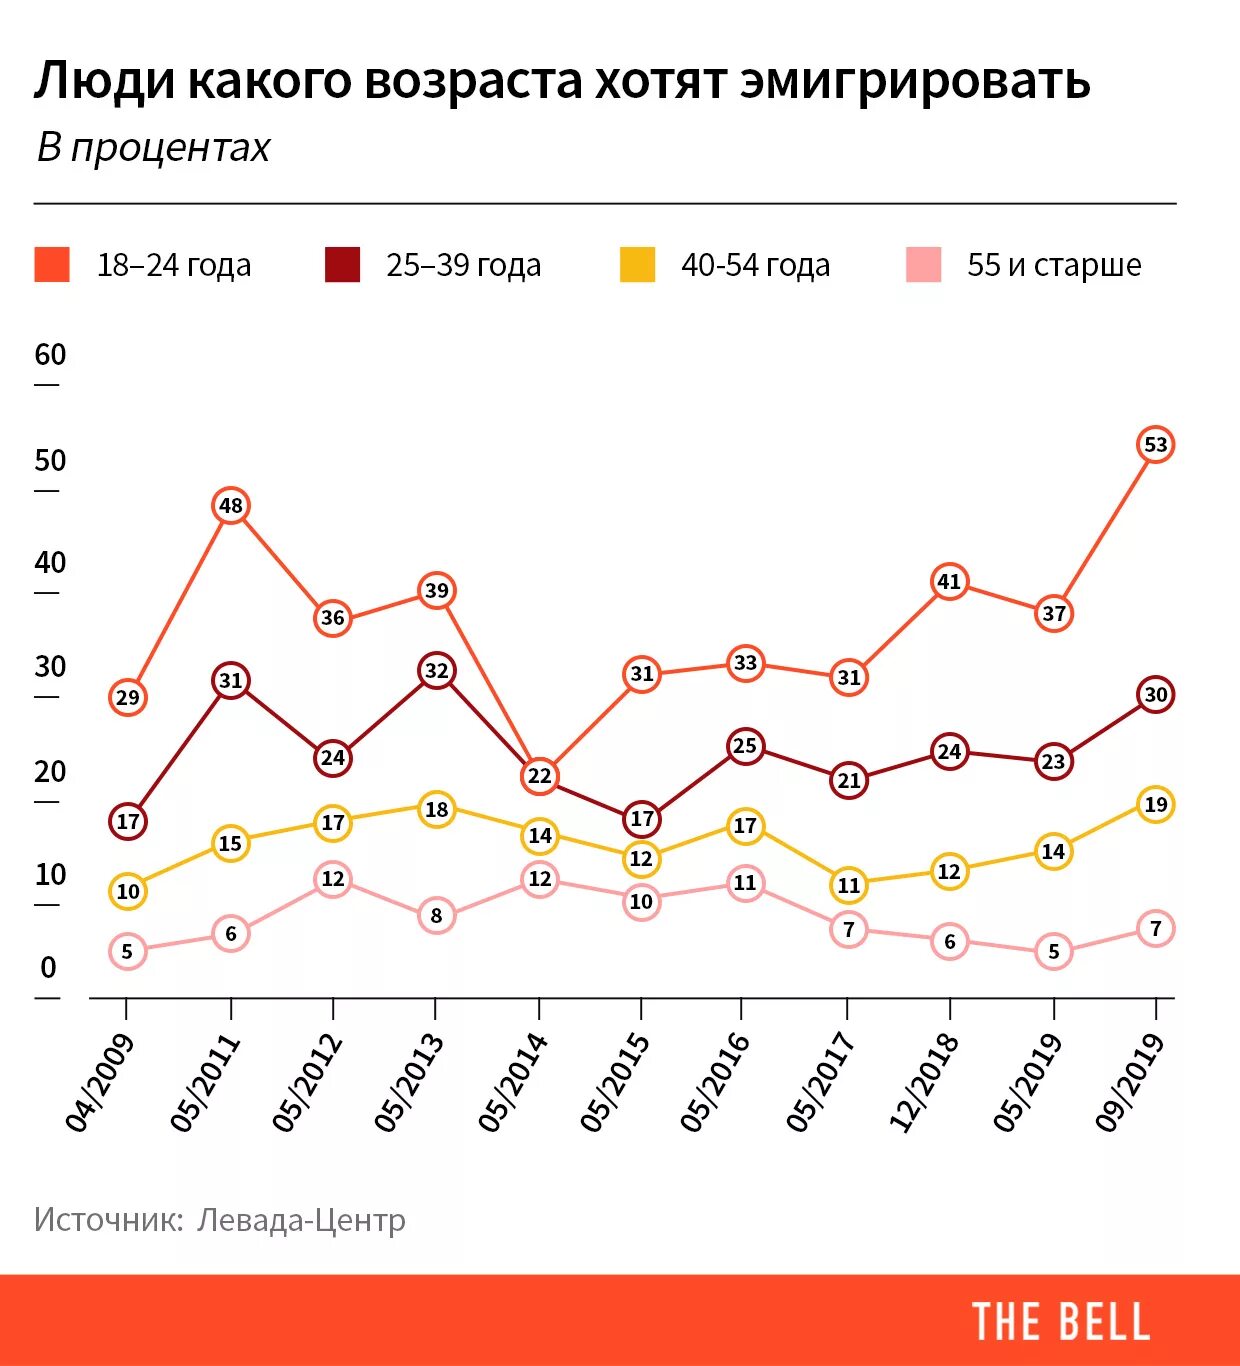 Что хотят люди в россии. Эмиграция из России график. Эмиграция из России статистика. Эмиграция из России 2020. Эмиграция в Россию статистика.